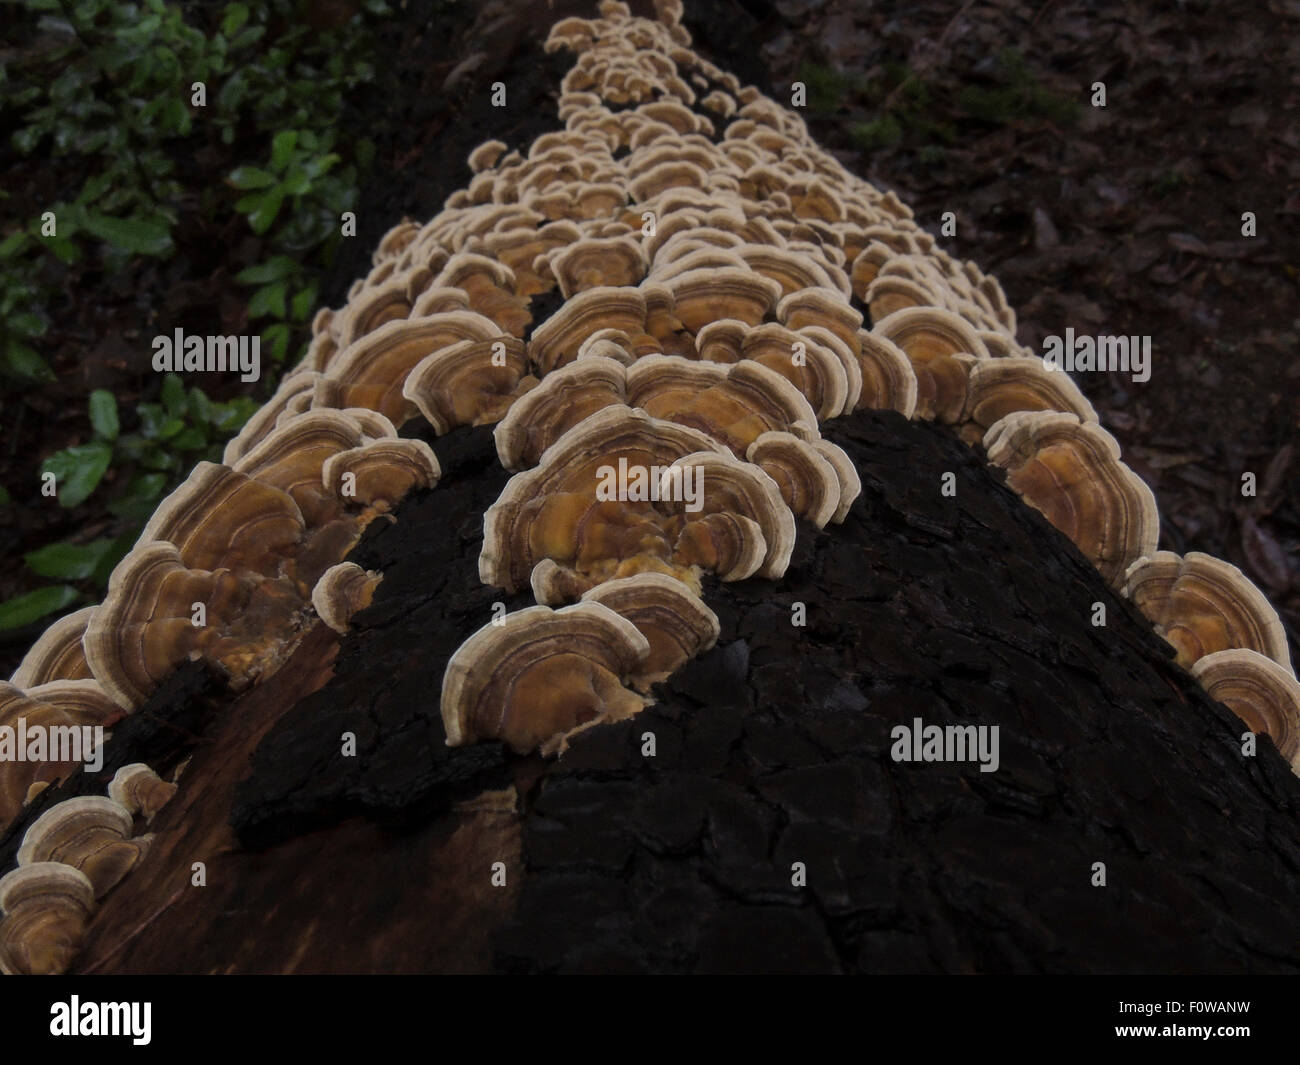 Trametes è un fungo che cresce su legno morto. È colorata e quindi è anche noto come ripiano arcobaleno il fungo e la Turchia di coda. Foto Stock